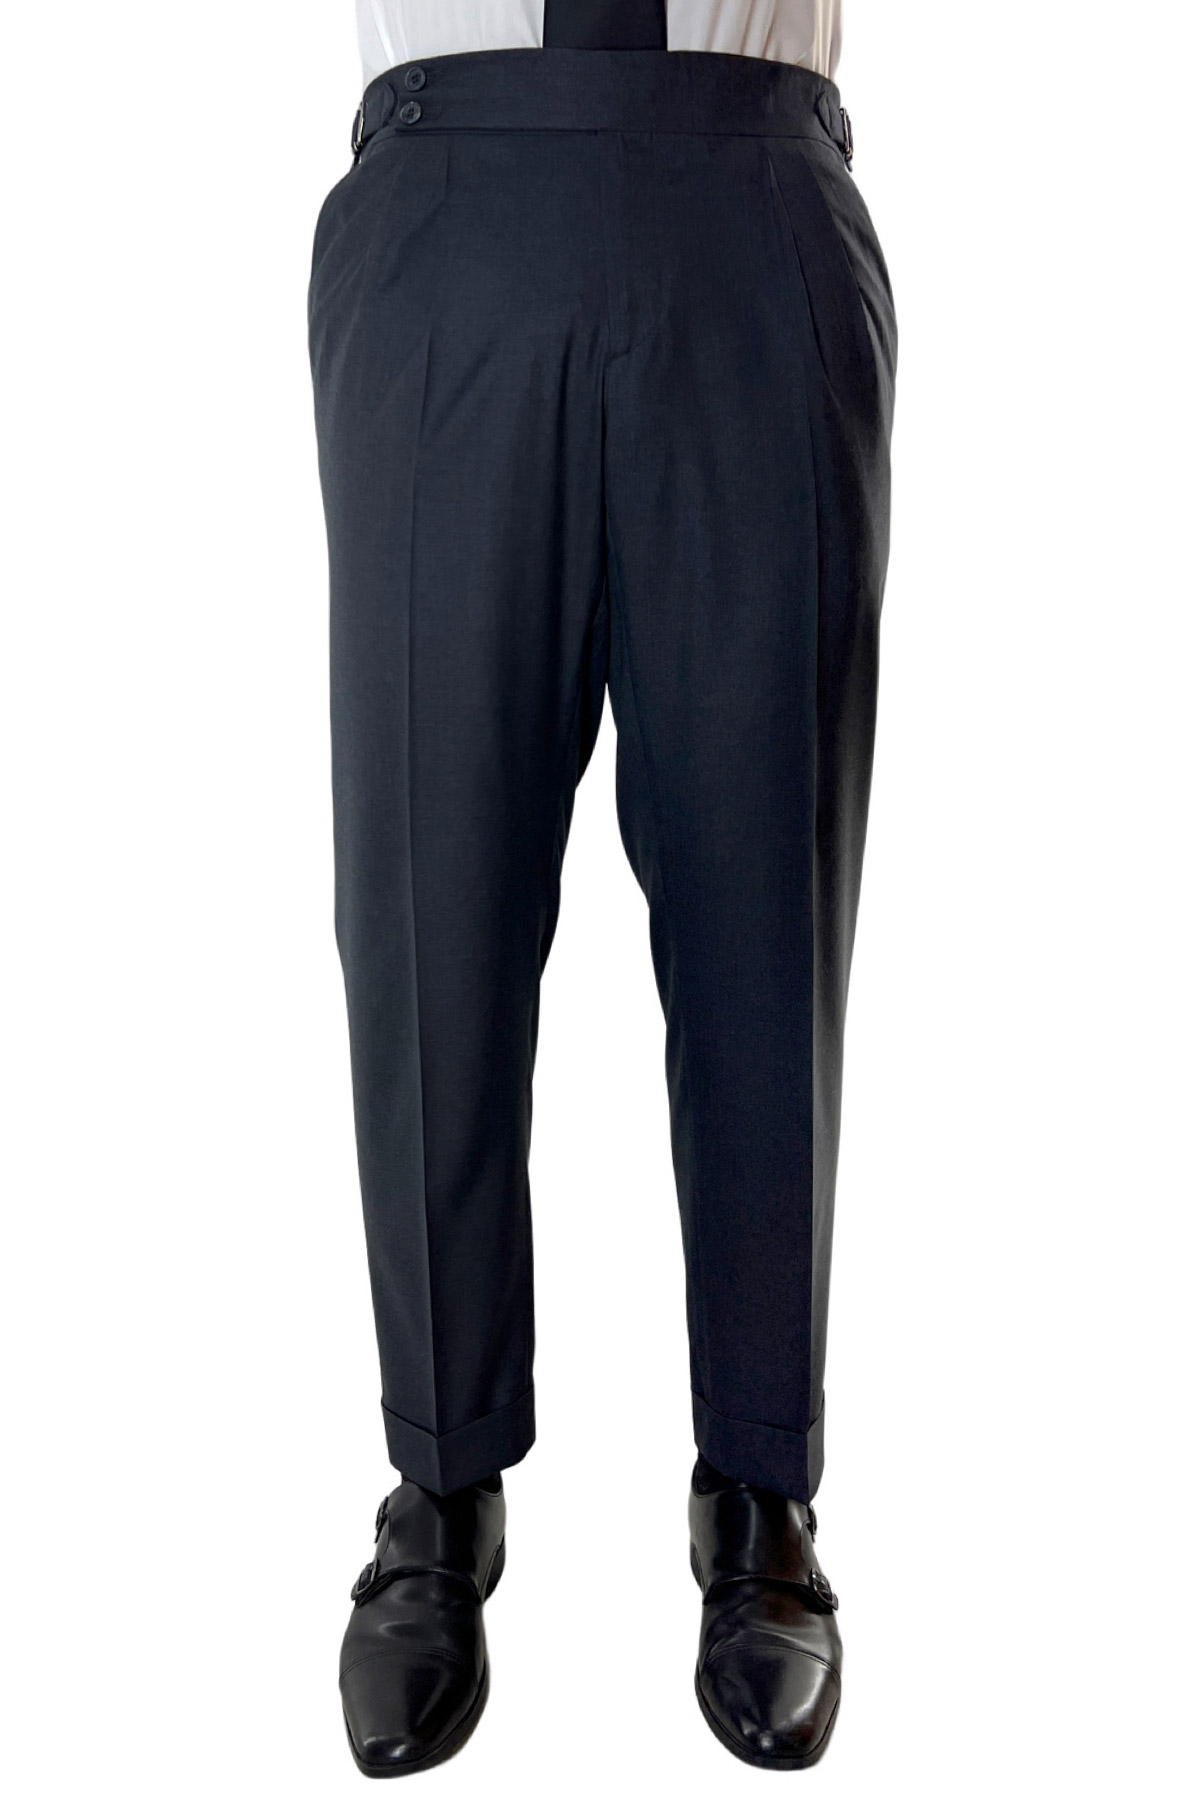 Pantalone uomo grigio scuro vita alta doppia pinces in fresco lana super 140's Holland & Sherry